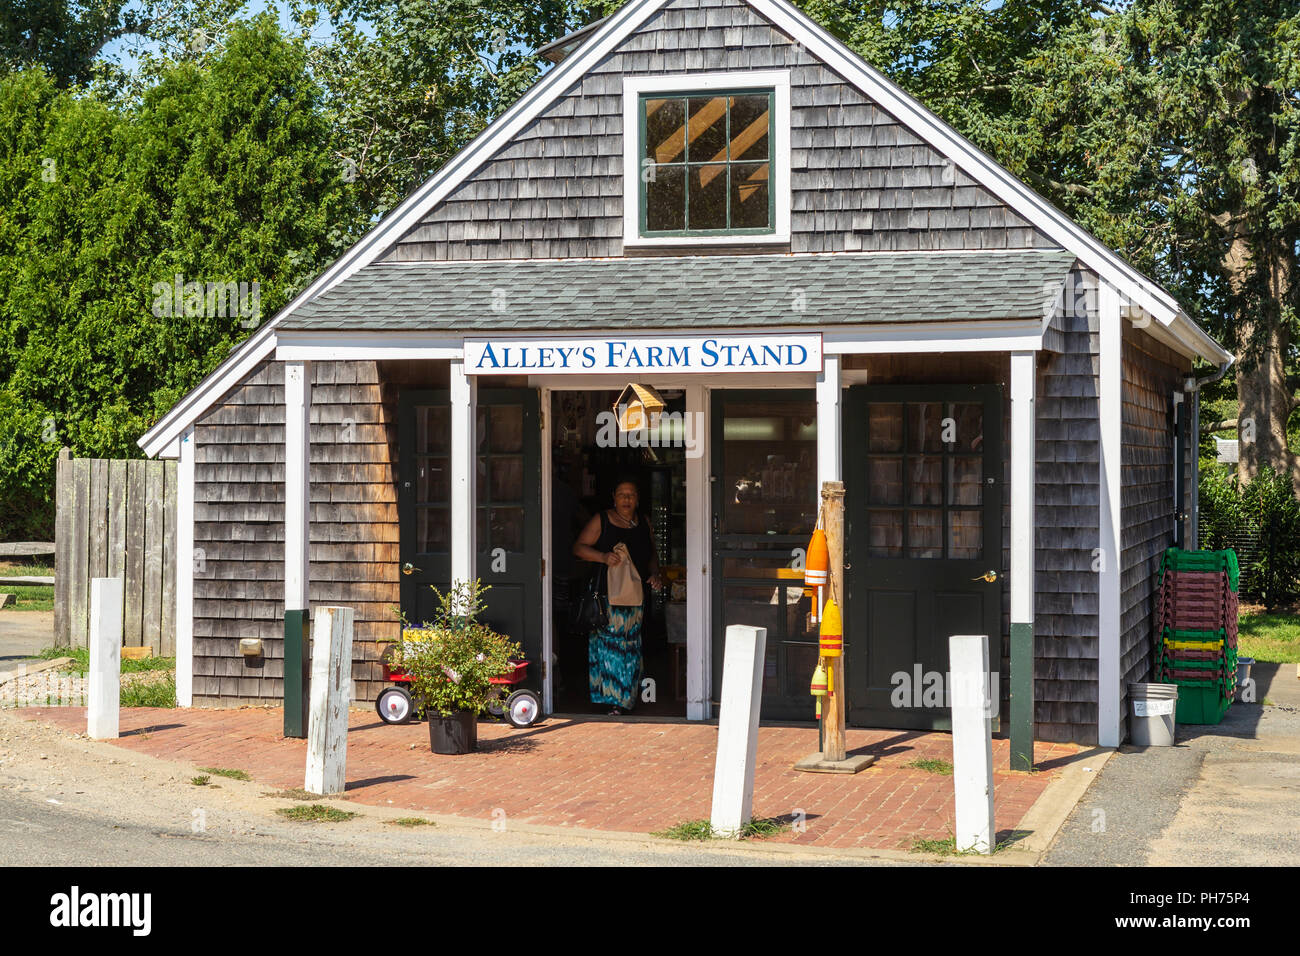 Une femme quitte l'allée historique ferme Stand après avoir effectué un achat à West Tisbury, Massachusetts sur Martha's Vineyard. Banque D'Images